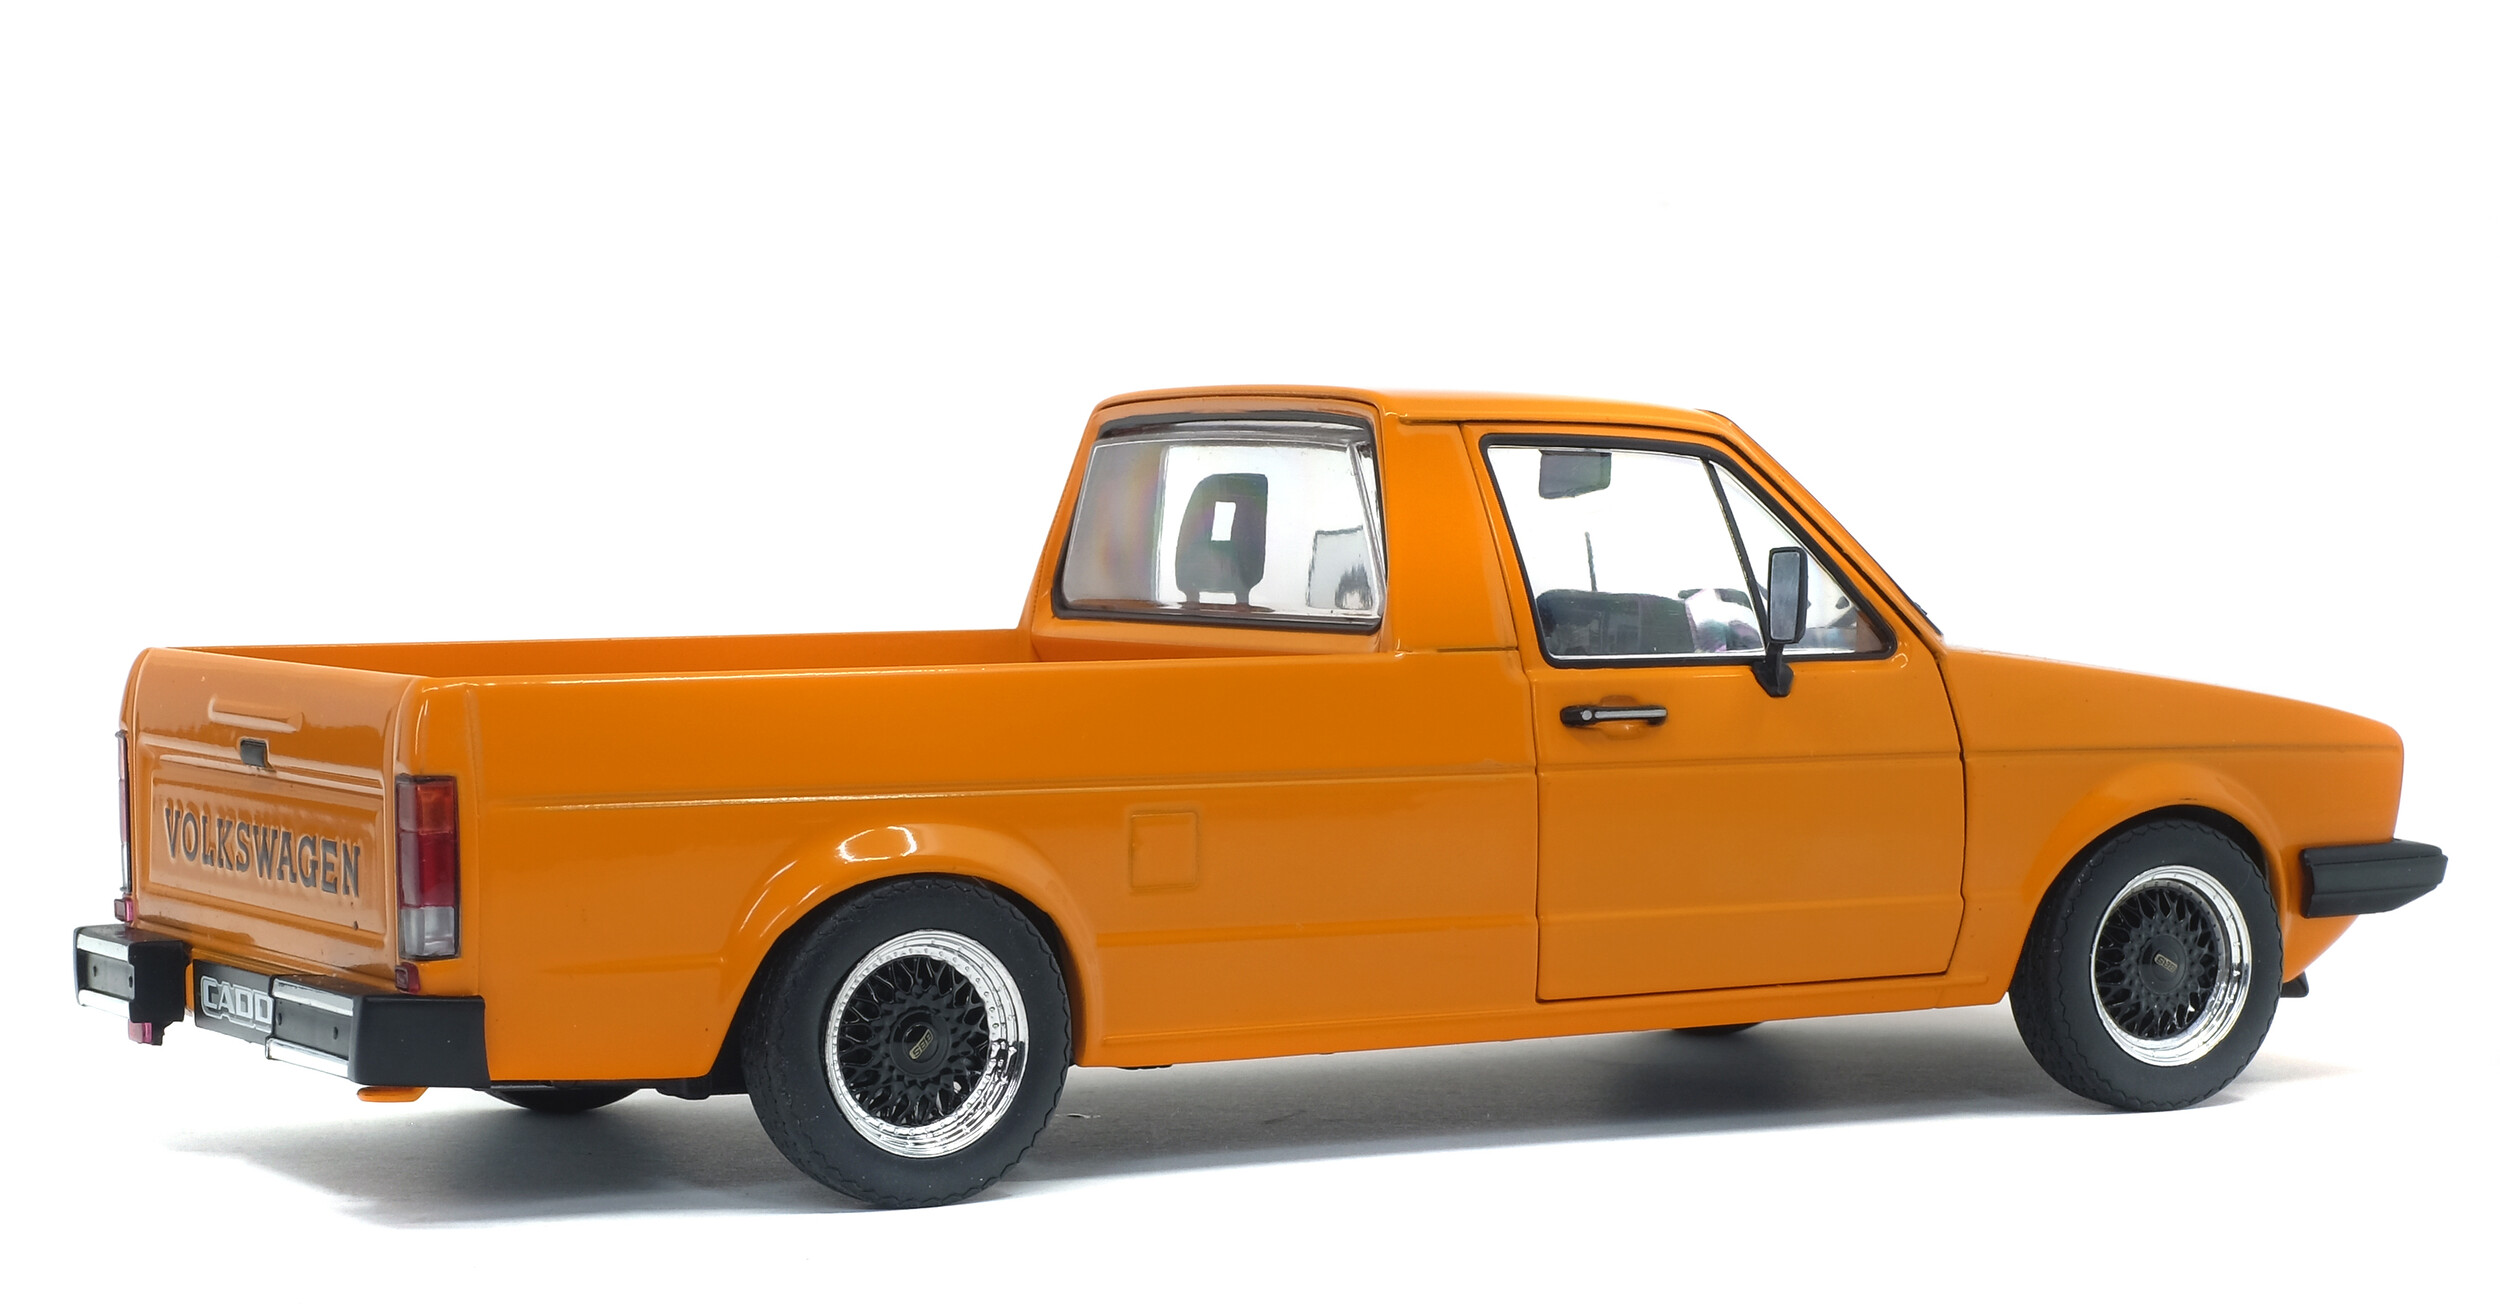 MB-TuningCars - 1:18 VW Caddy MK1 Baujahr 1982 Orange Diecast